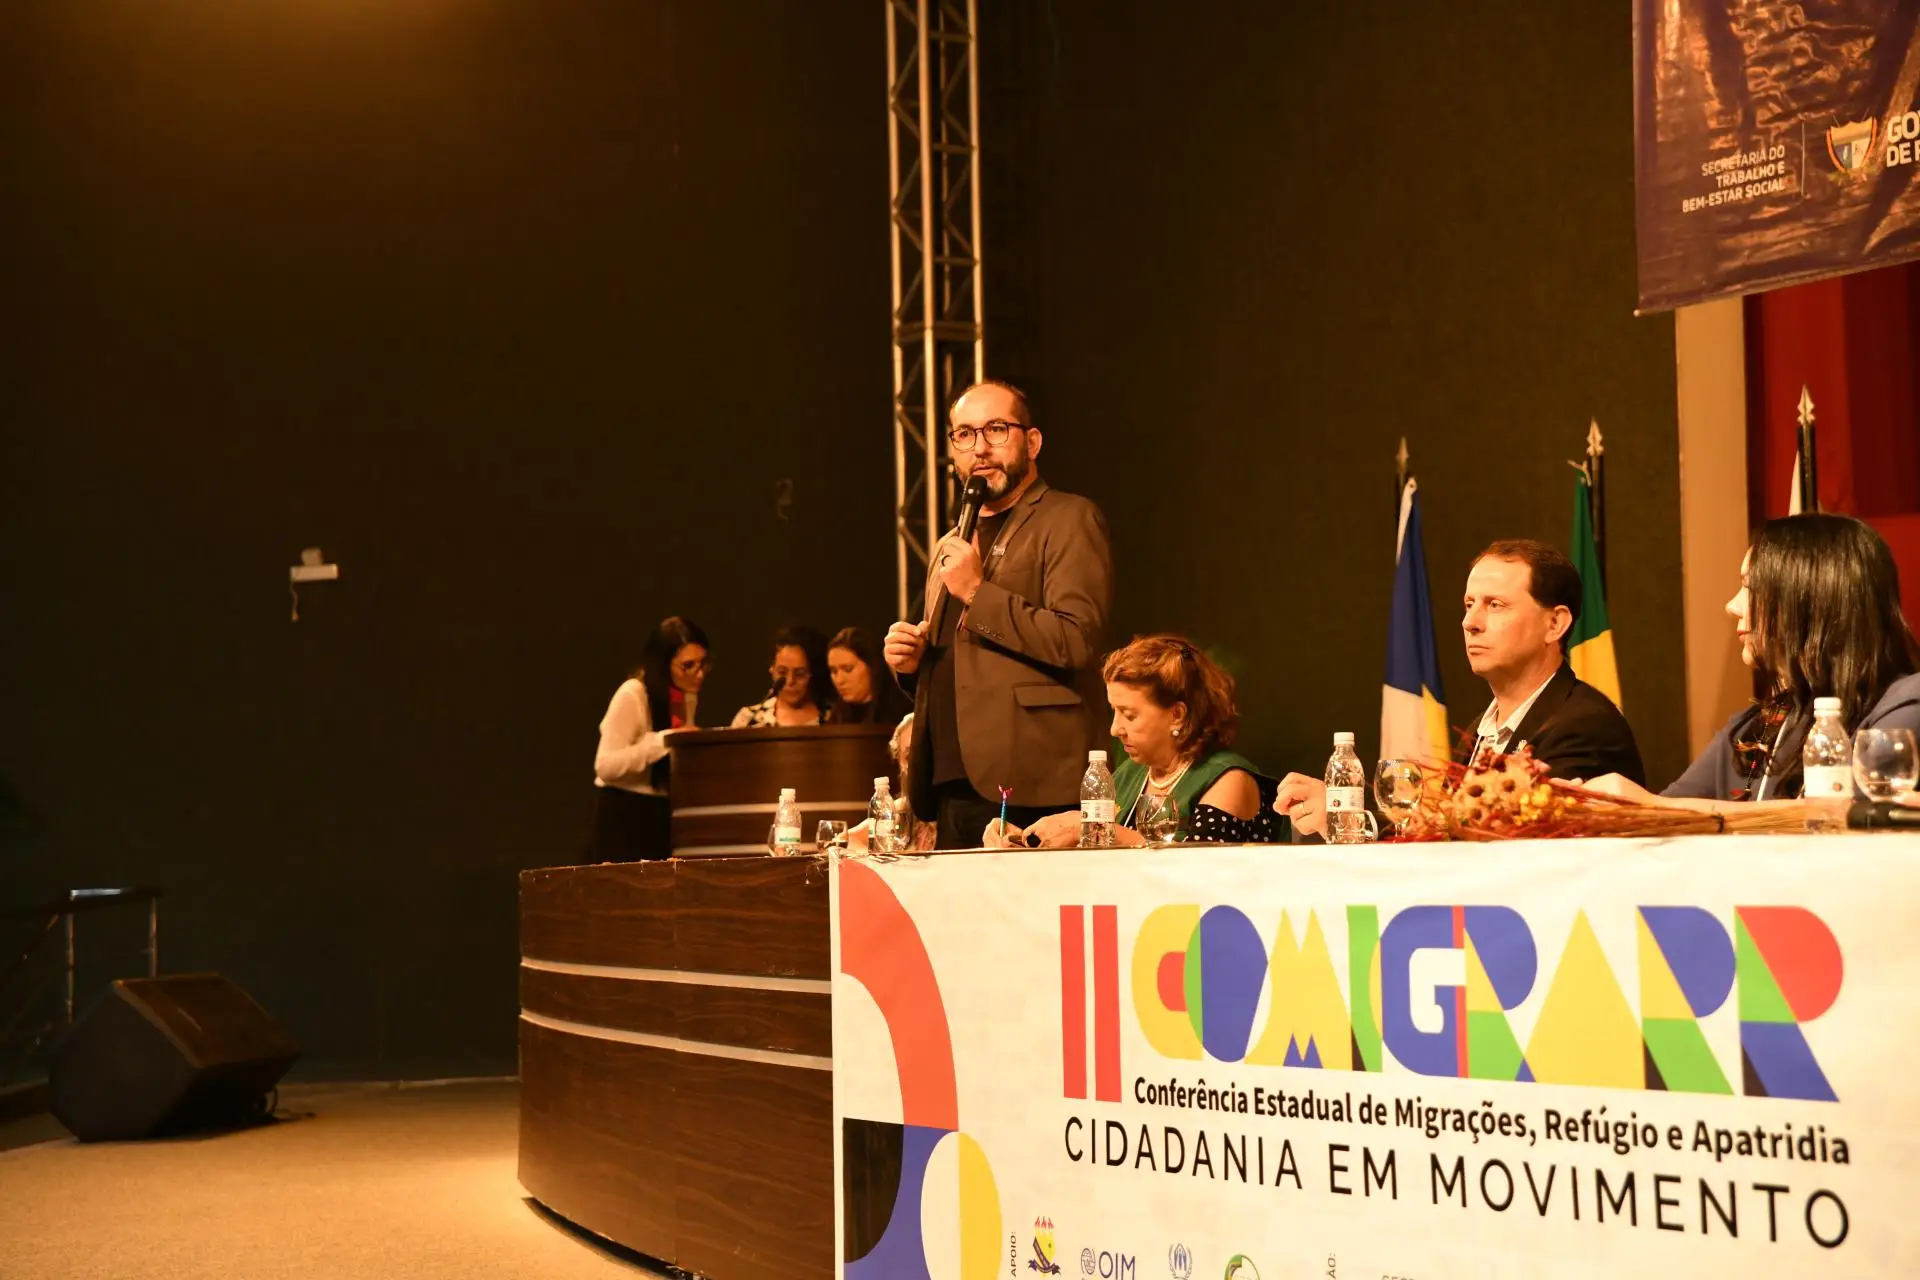 2ª Conferência Estadual de Migrações, Refúgio e Apatridia promove diálogo e integração em Roraima